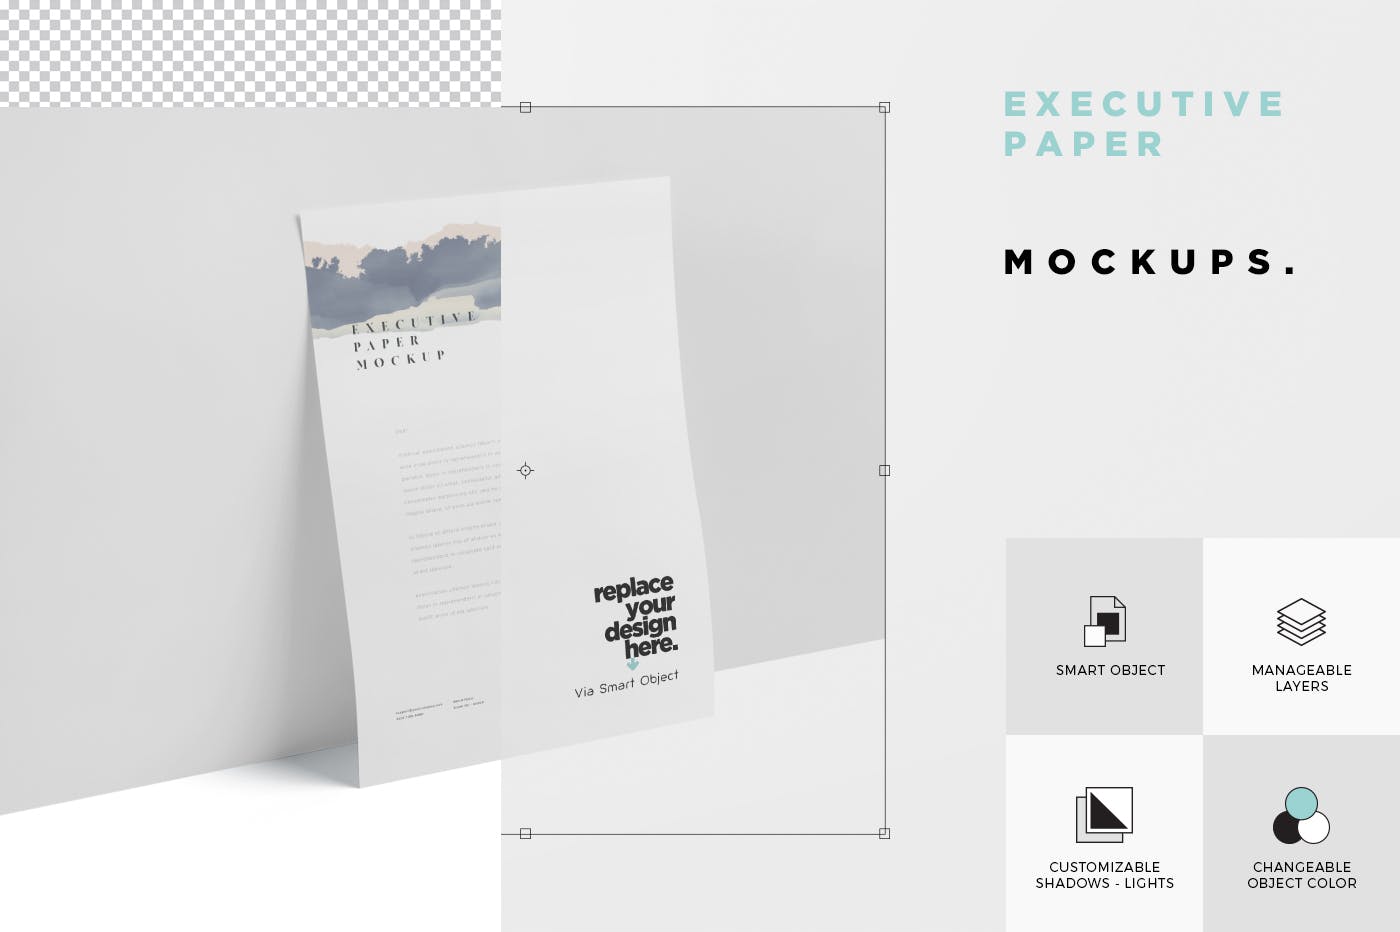 企业宣传单张设计效果图样机大洋岛精选 Executive Paper Mockup – 7×10 Inch Size插图5